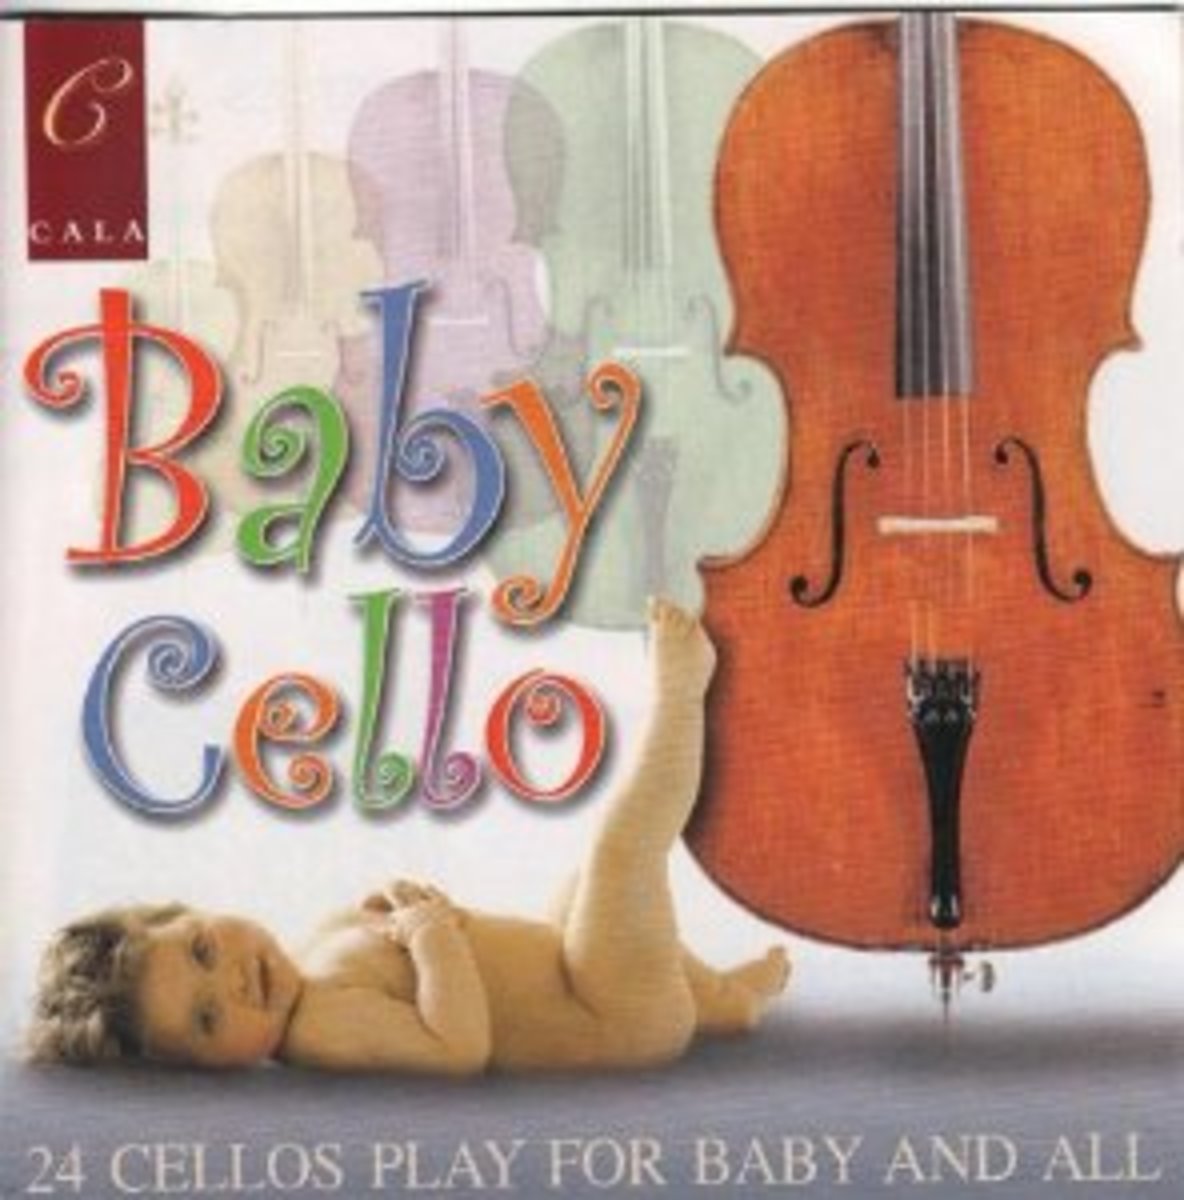 Baby Cello